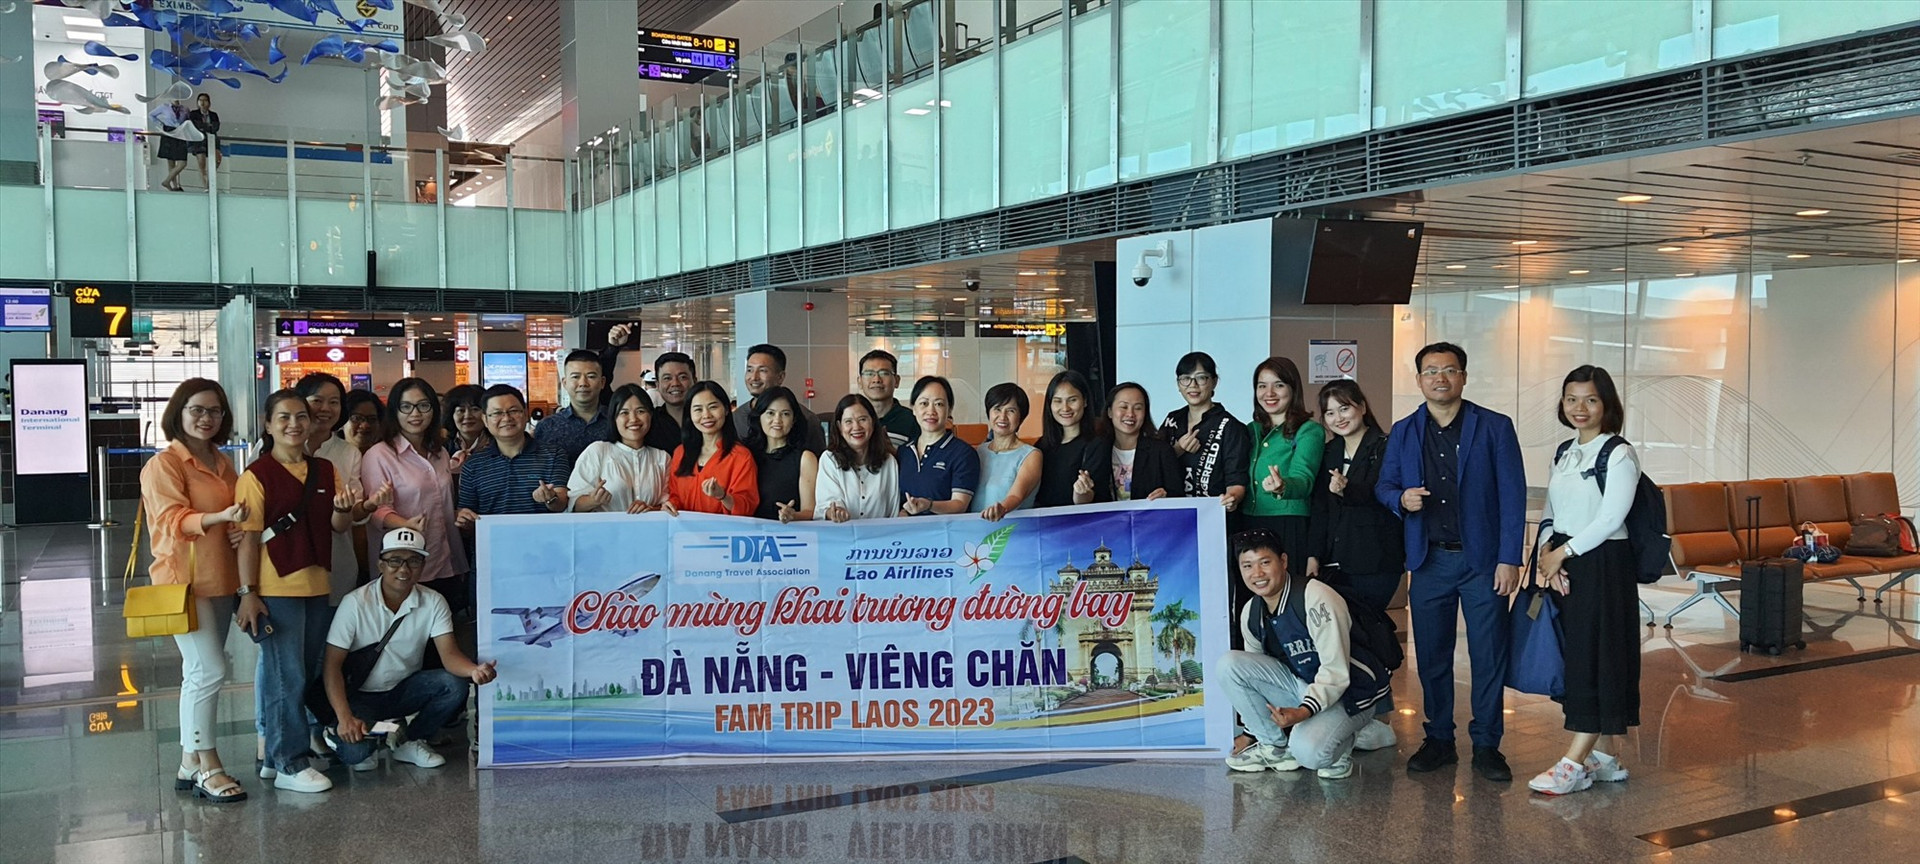 Đoàn Famtrip khảo sát du lịch tại Lào